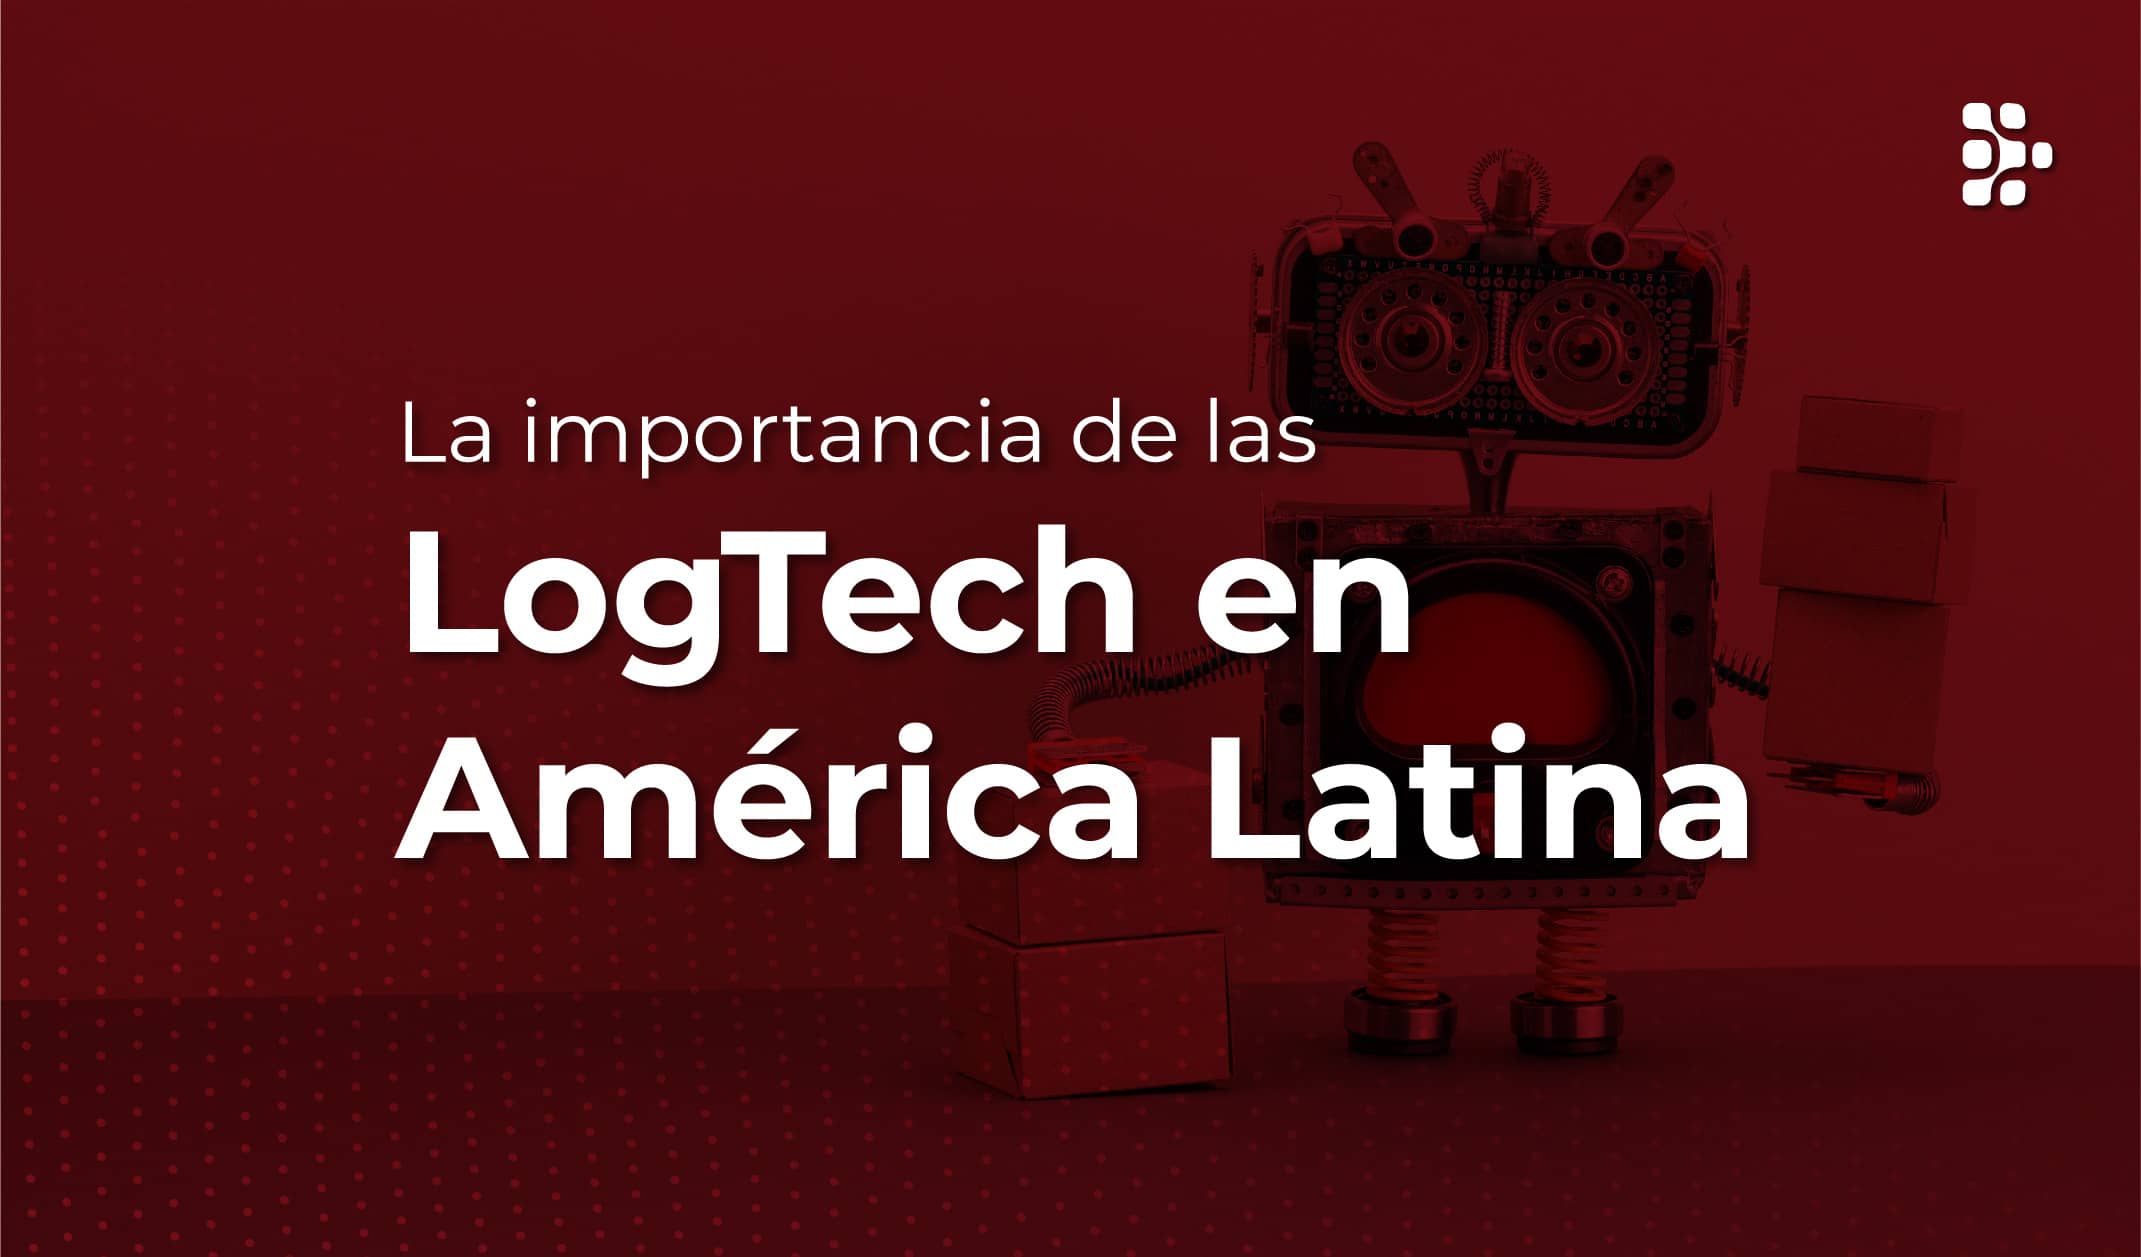 La importancia de las LogTech en America Latina